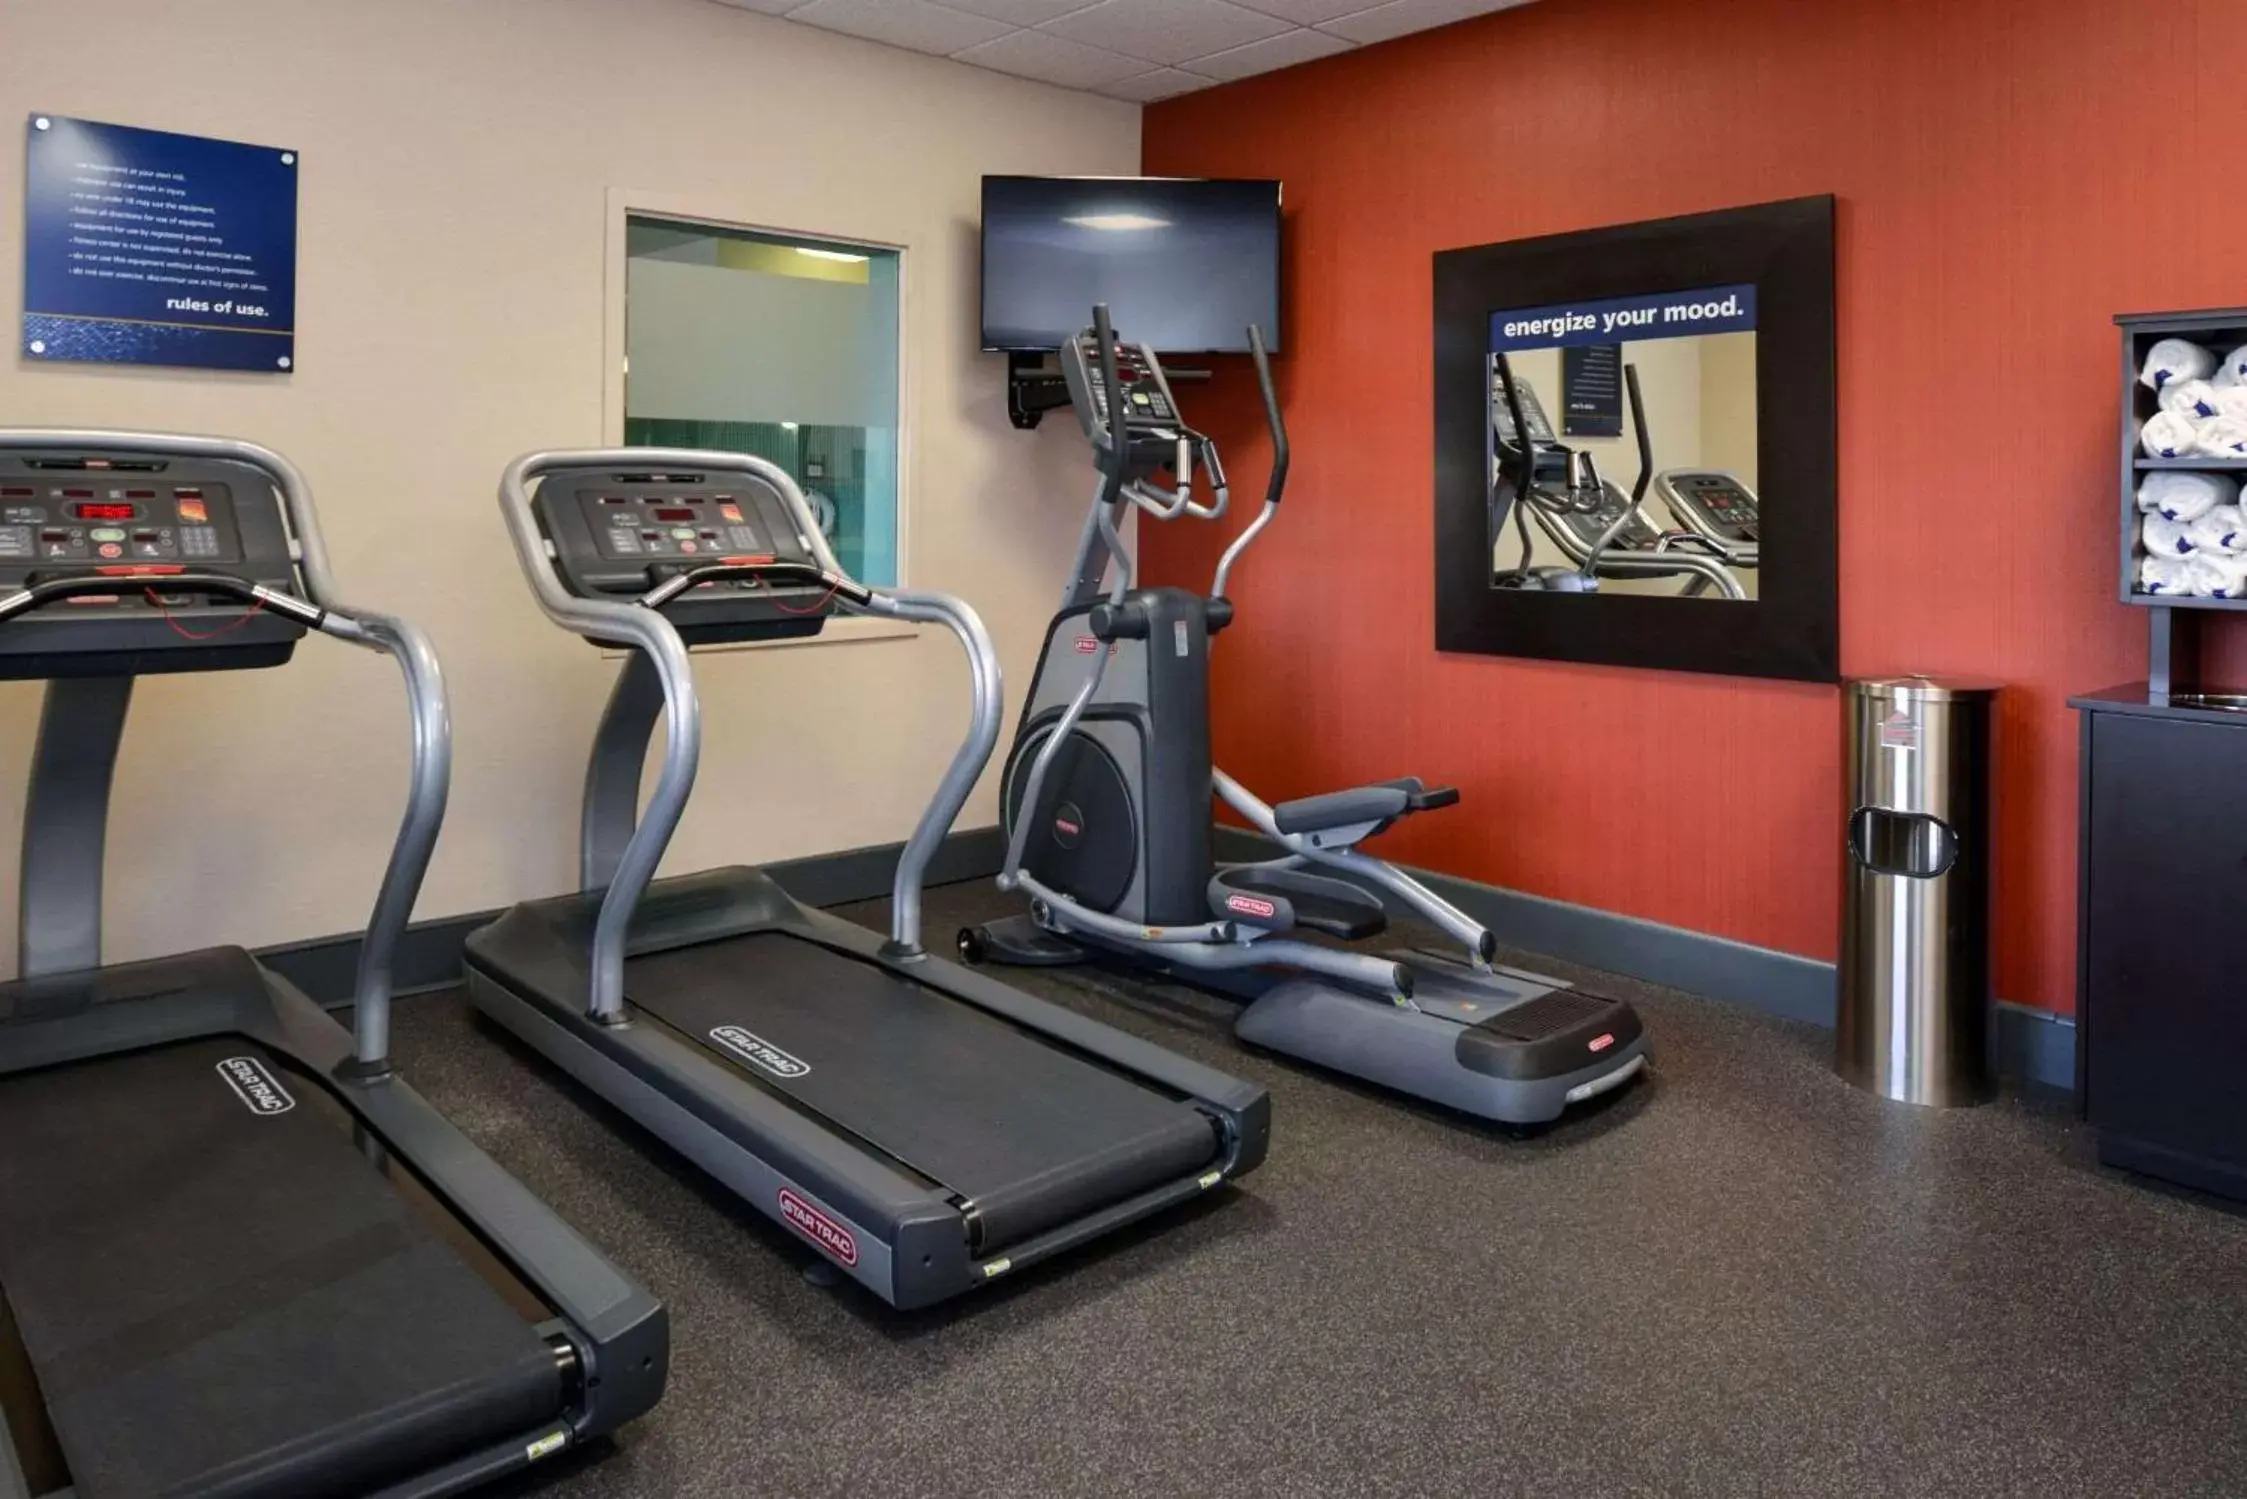 Fitness centre/facilities, Fitness Center/Facilities in Hampton Inn & Suites Springboro